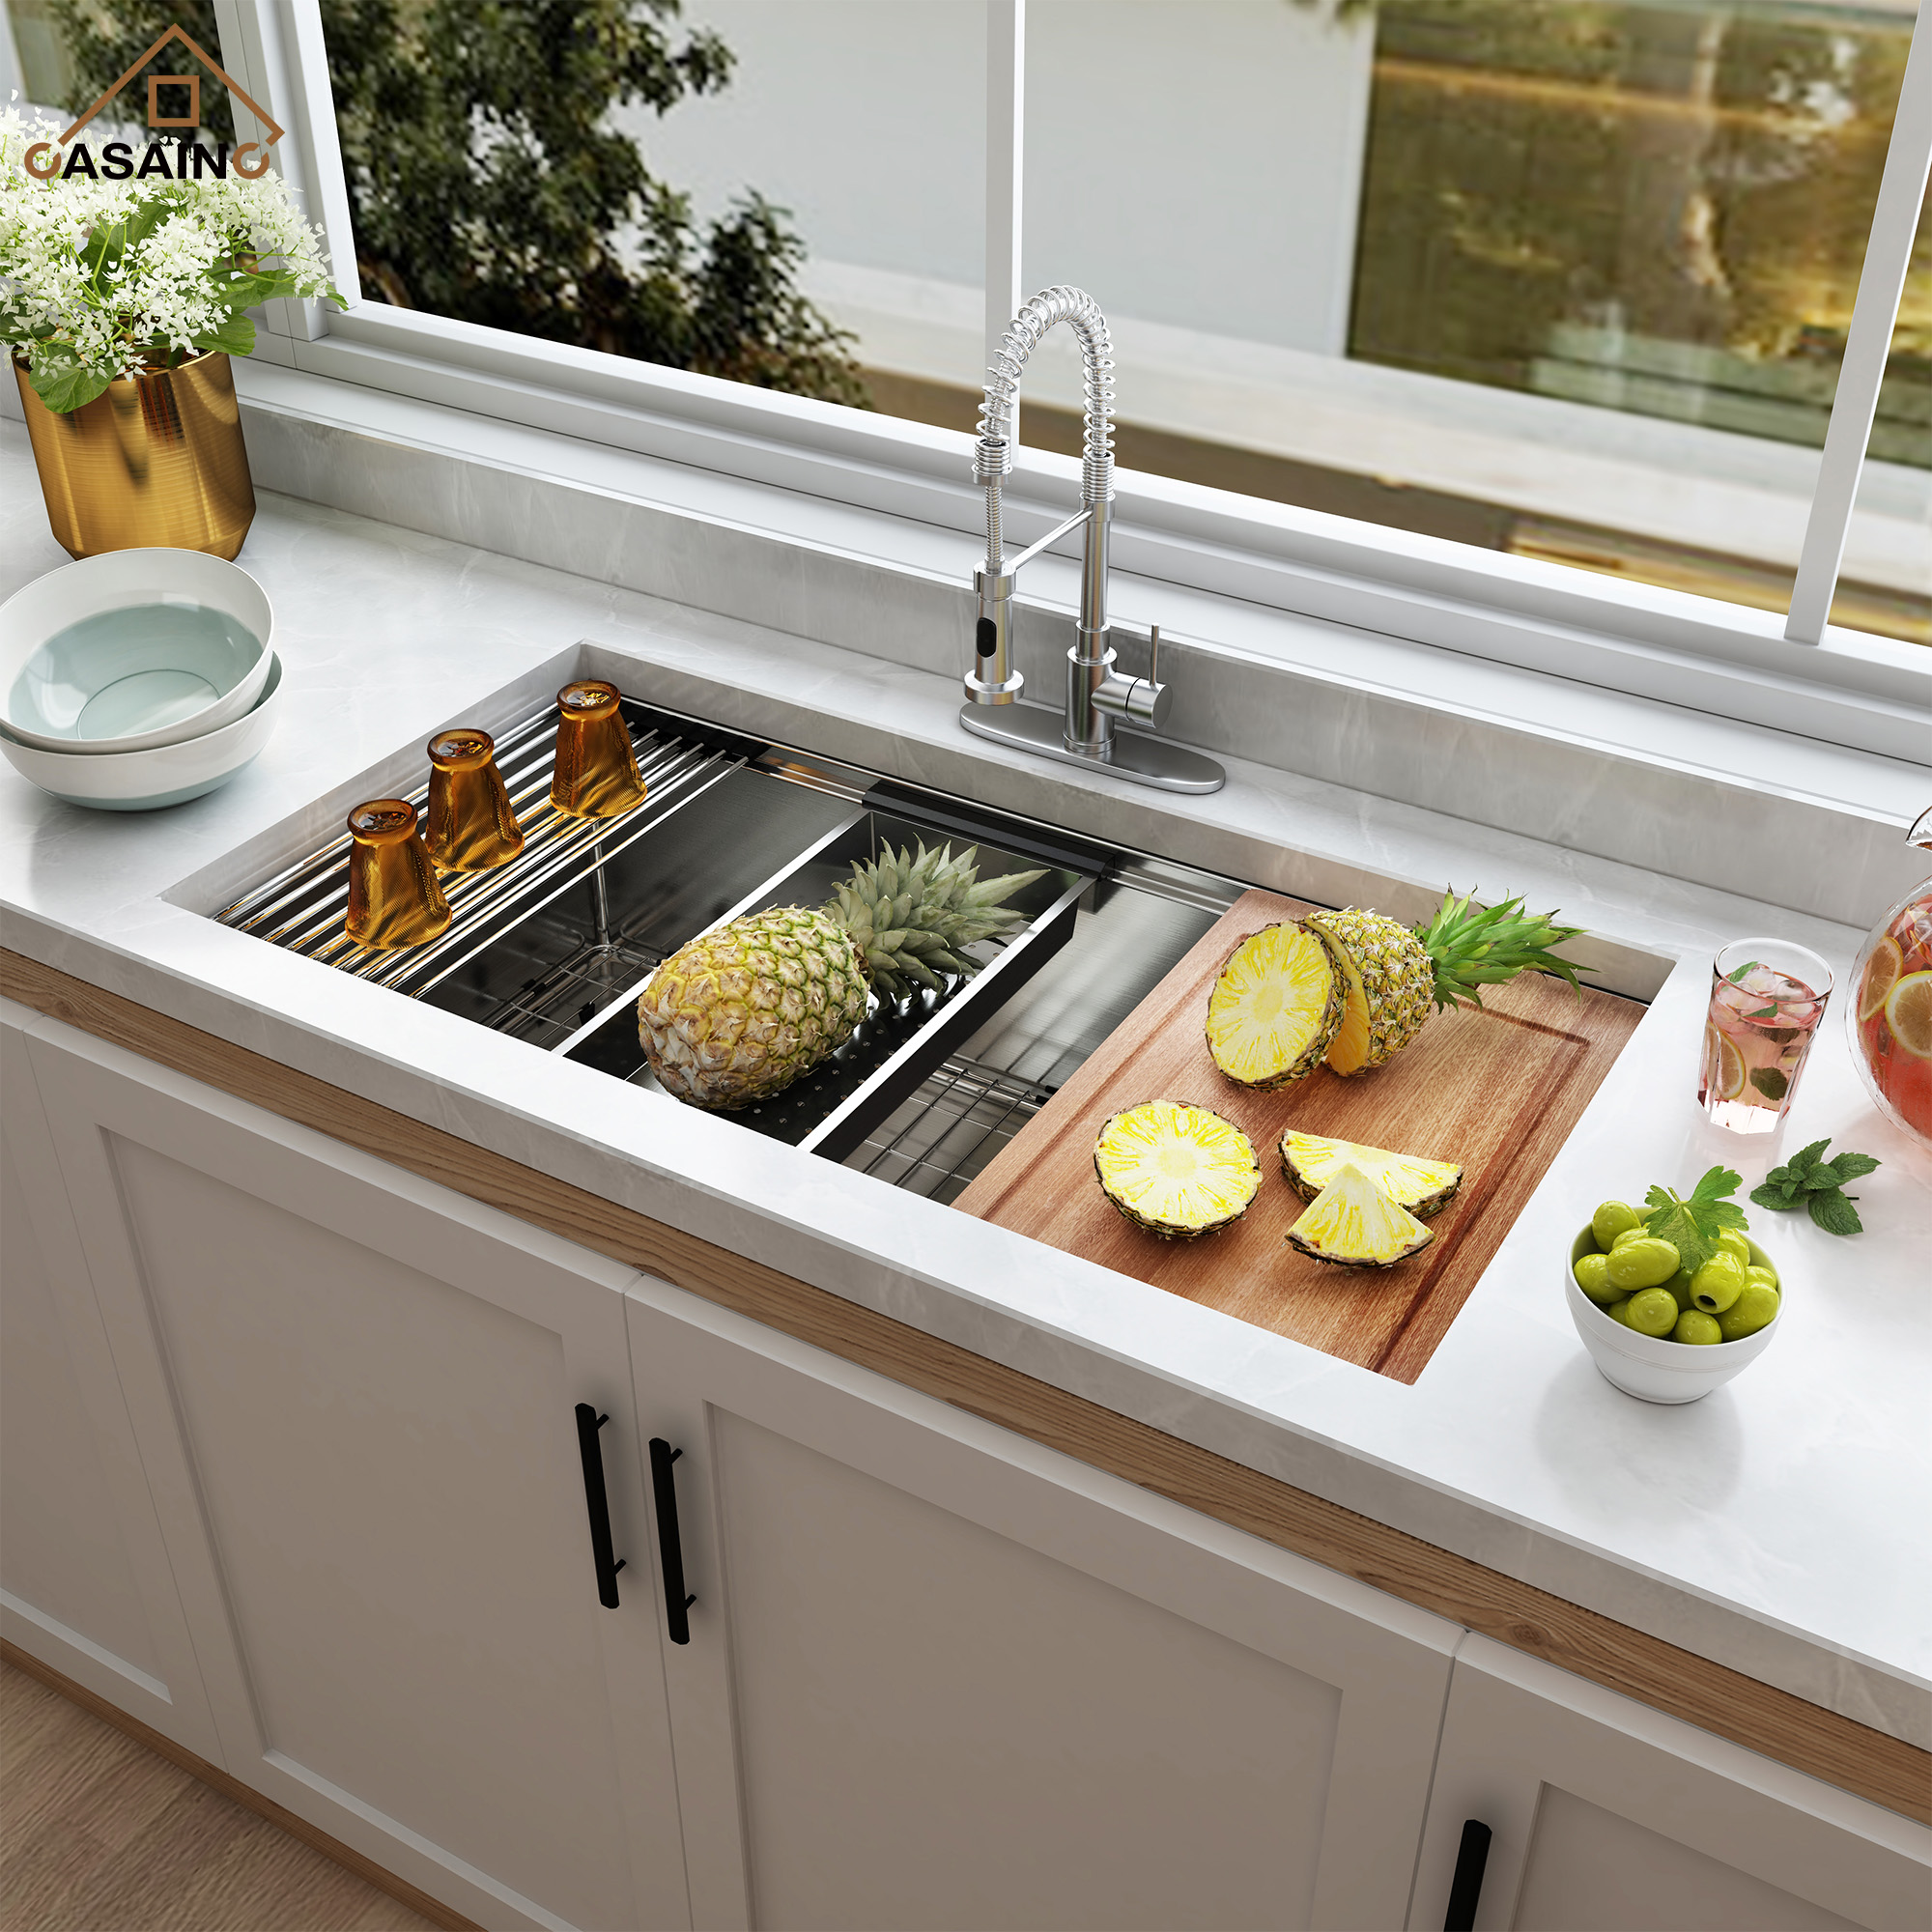 36 inch Workstation Undermount kitchen Sink Stainless Steel Sink 18 Gauge Single Bowl Kitchen Sinks Set